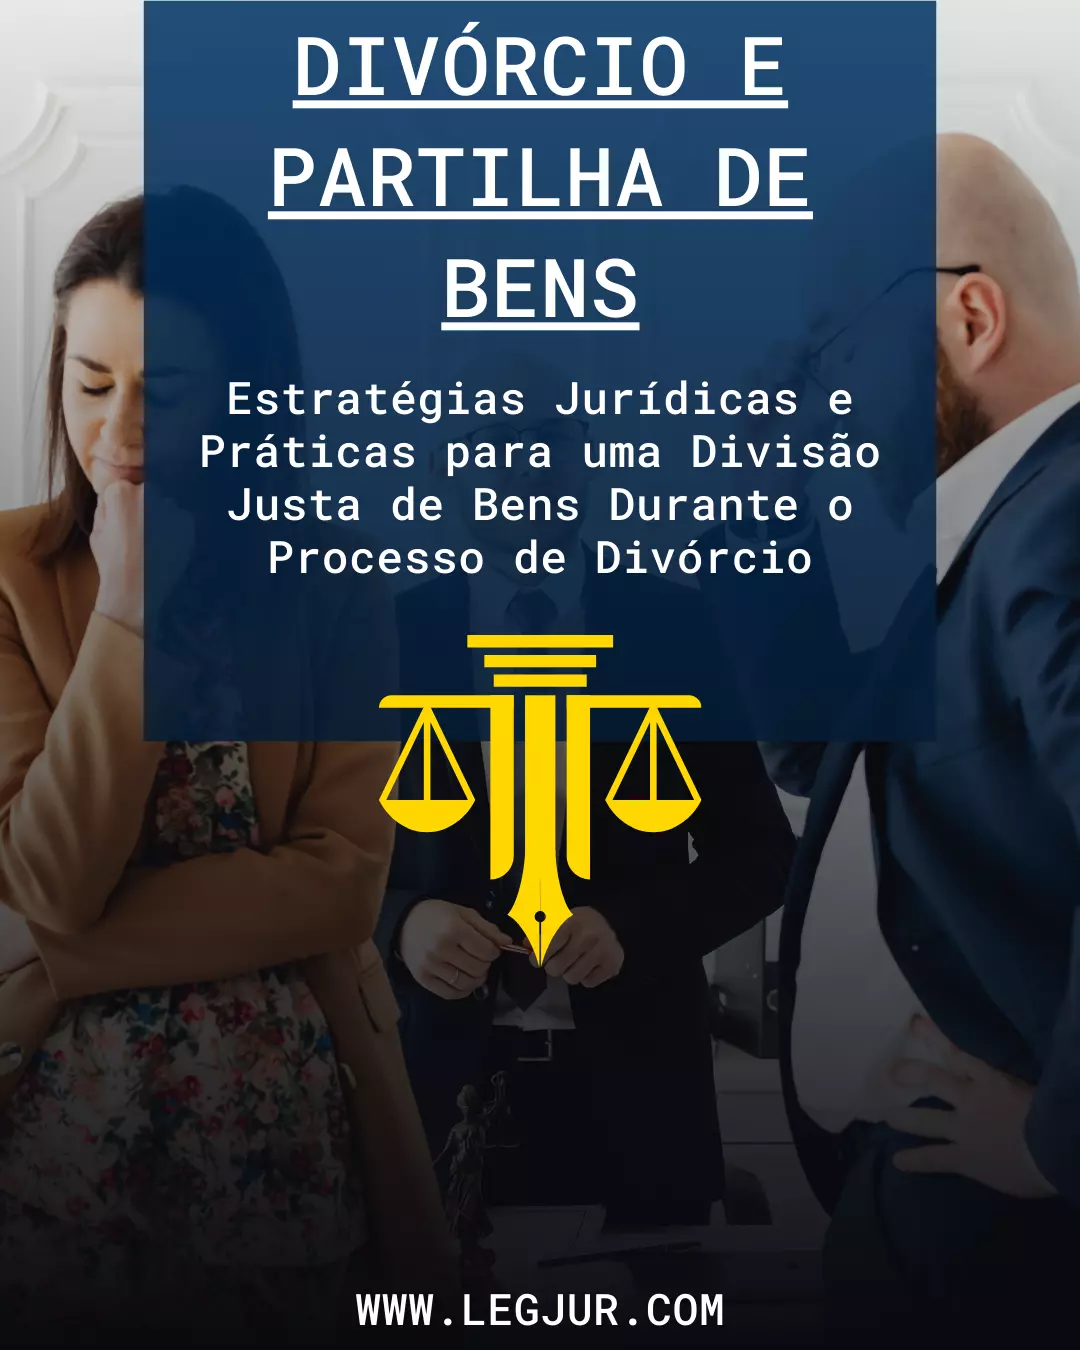 Guia para Advogados sobre Divórcio e Partilha de Bens: Estratégias Jurídicas e Táticas Práticas para uma Divisão Justa de Ativos